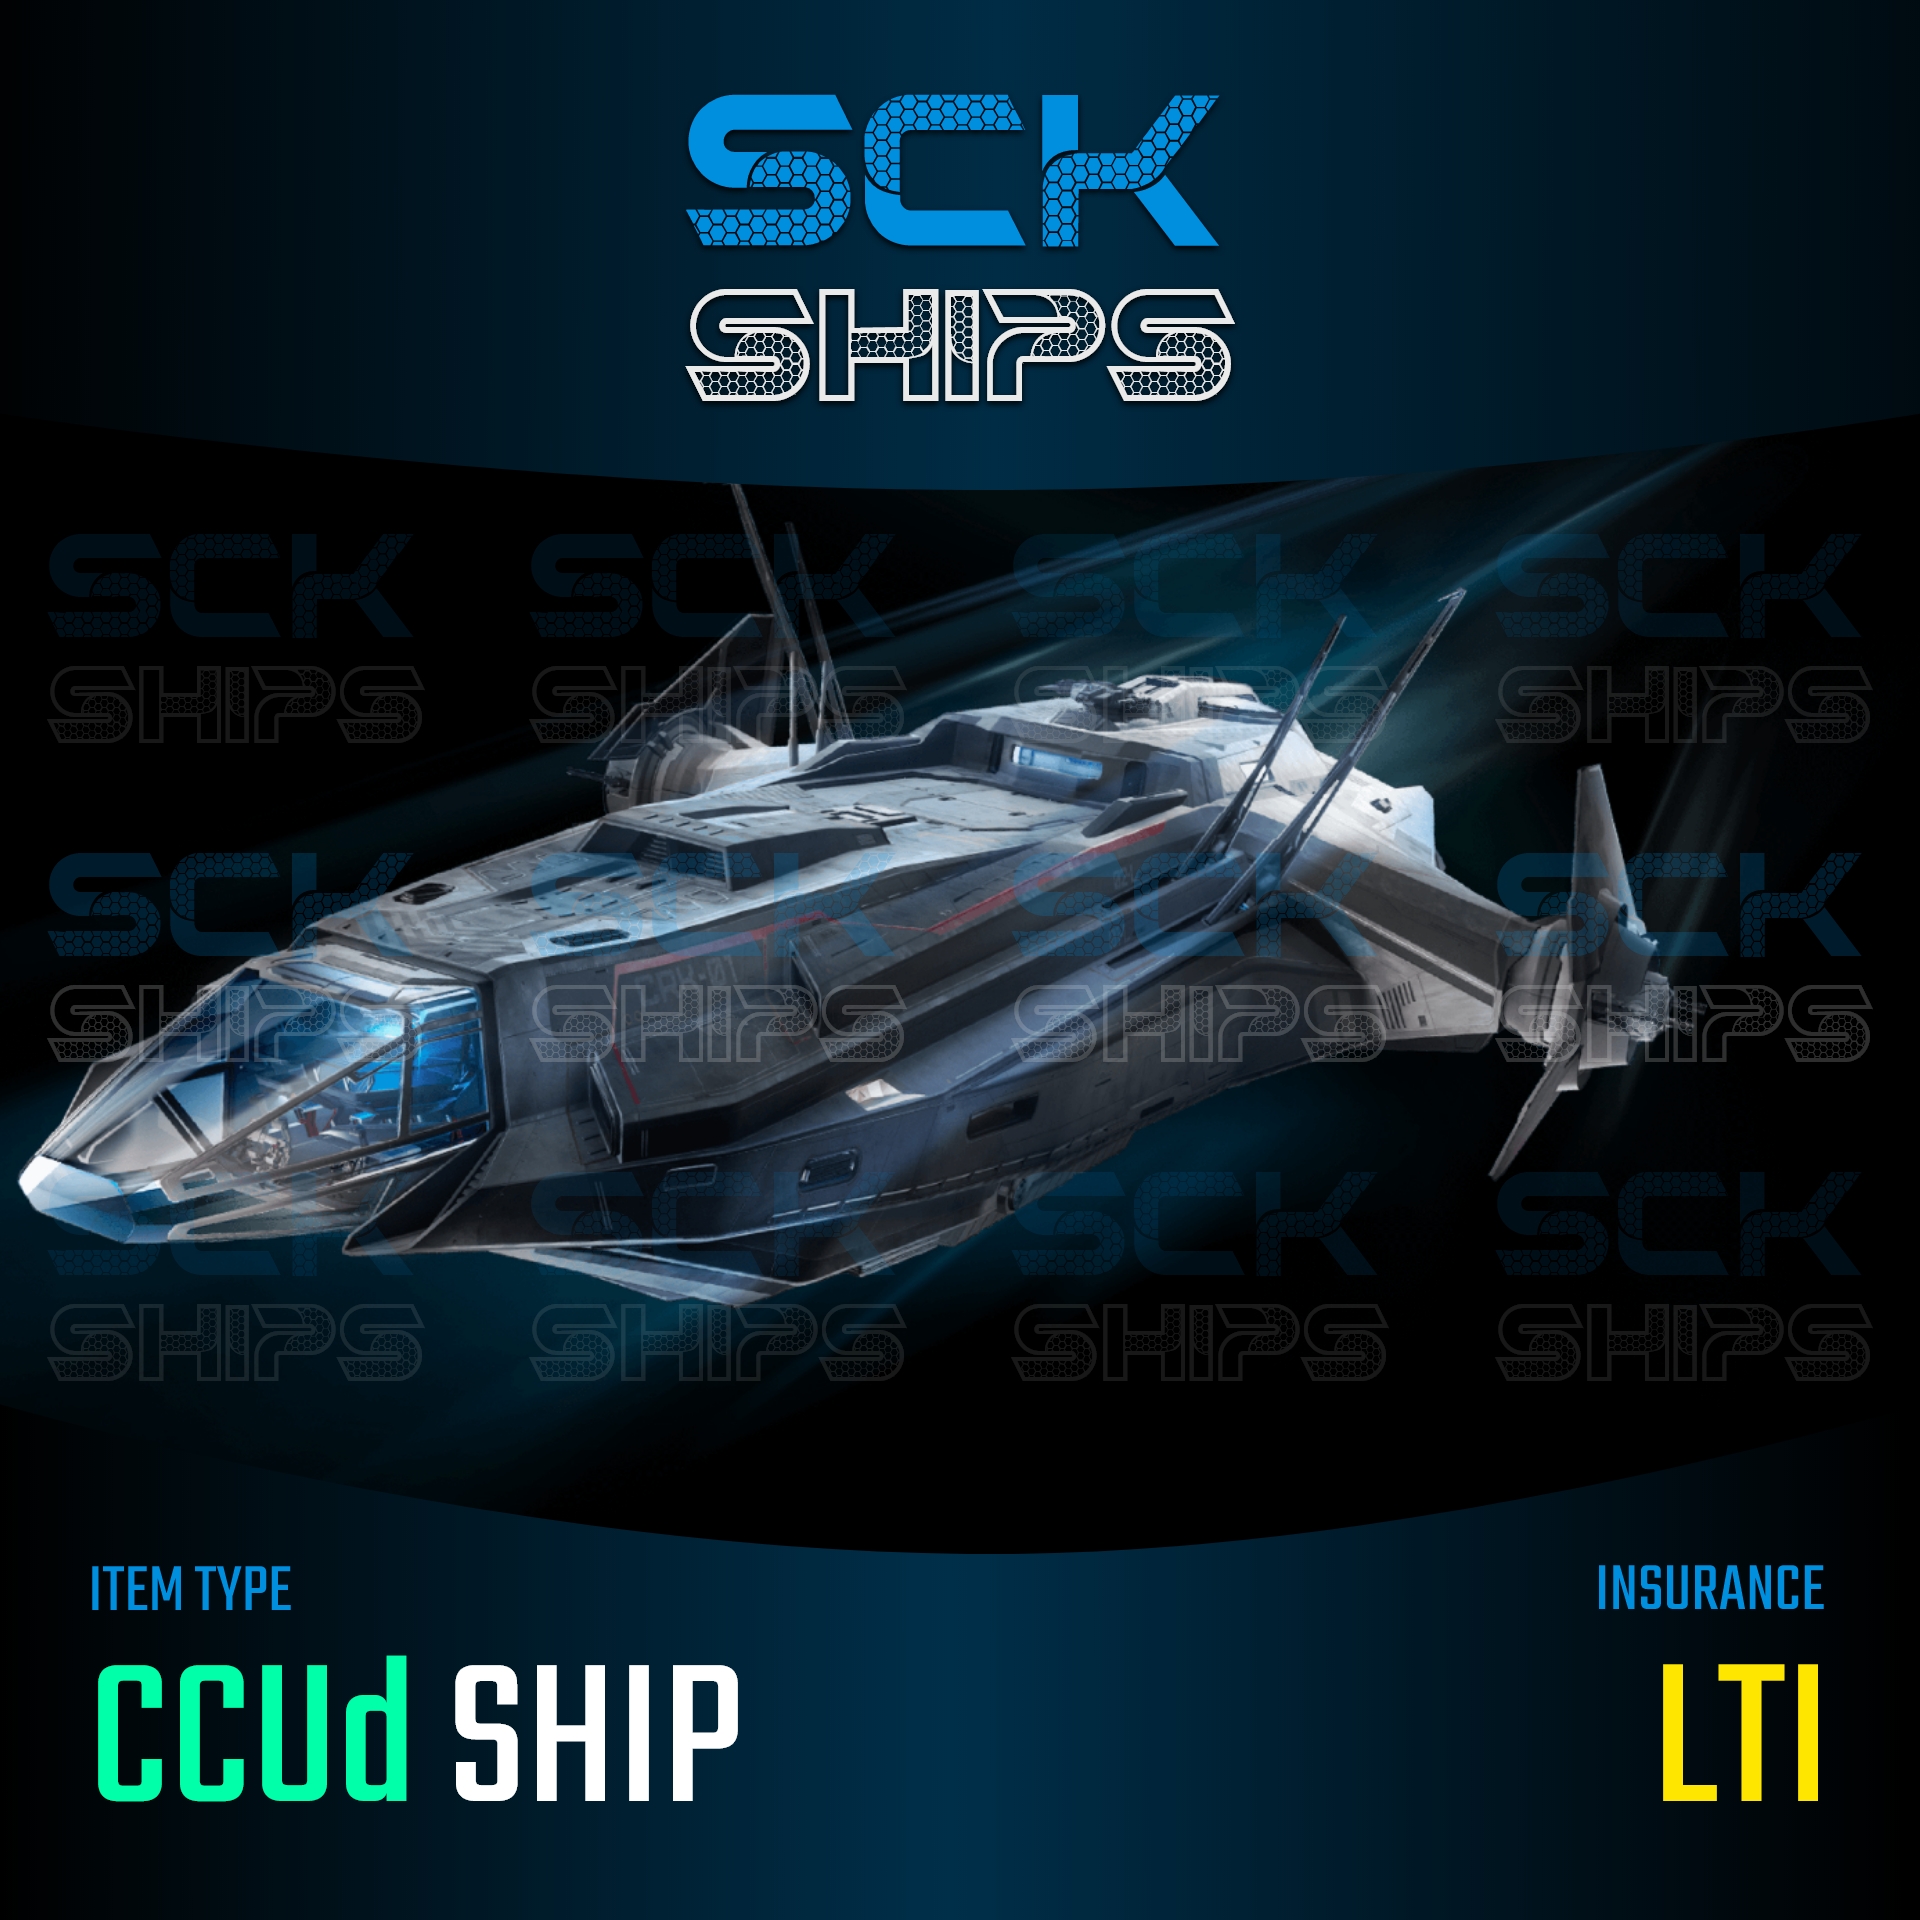 Anvil Carrack LTI - SckShips